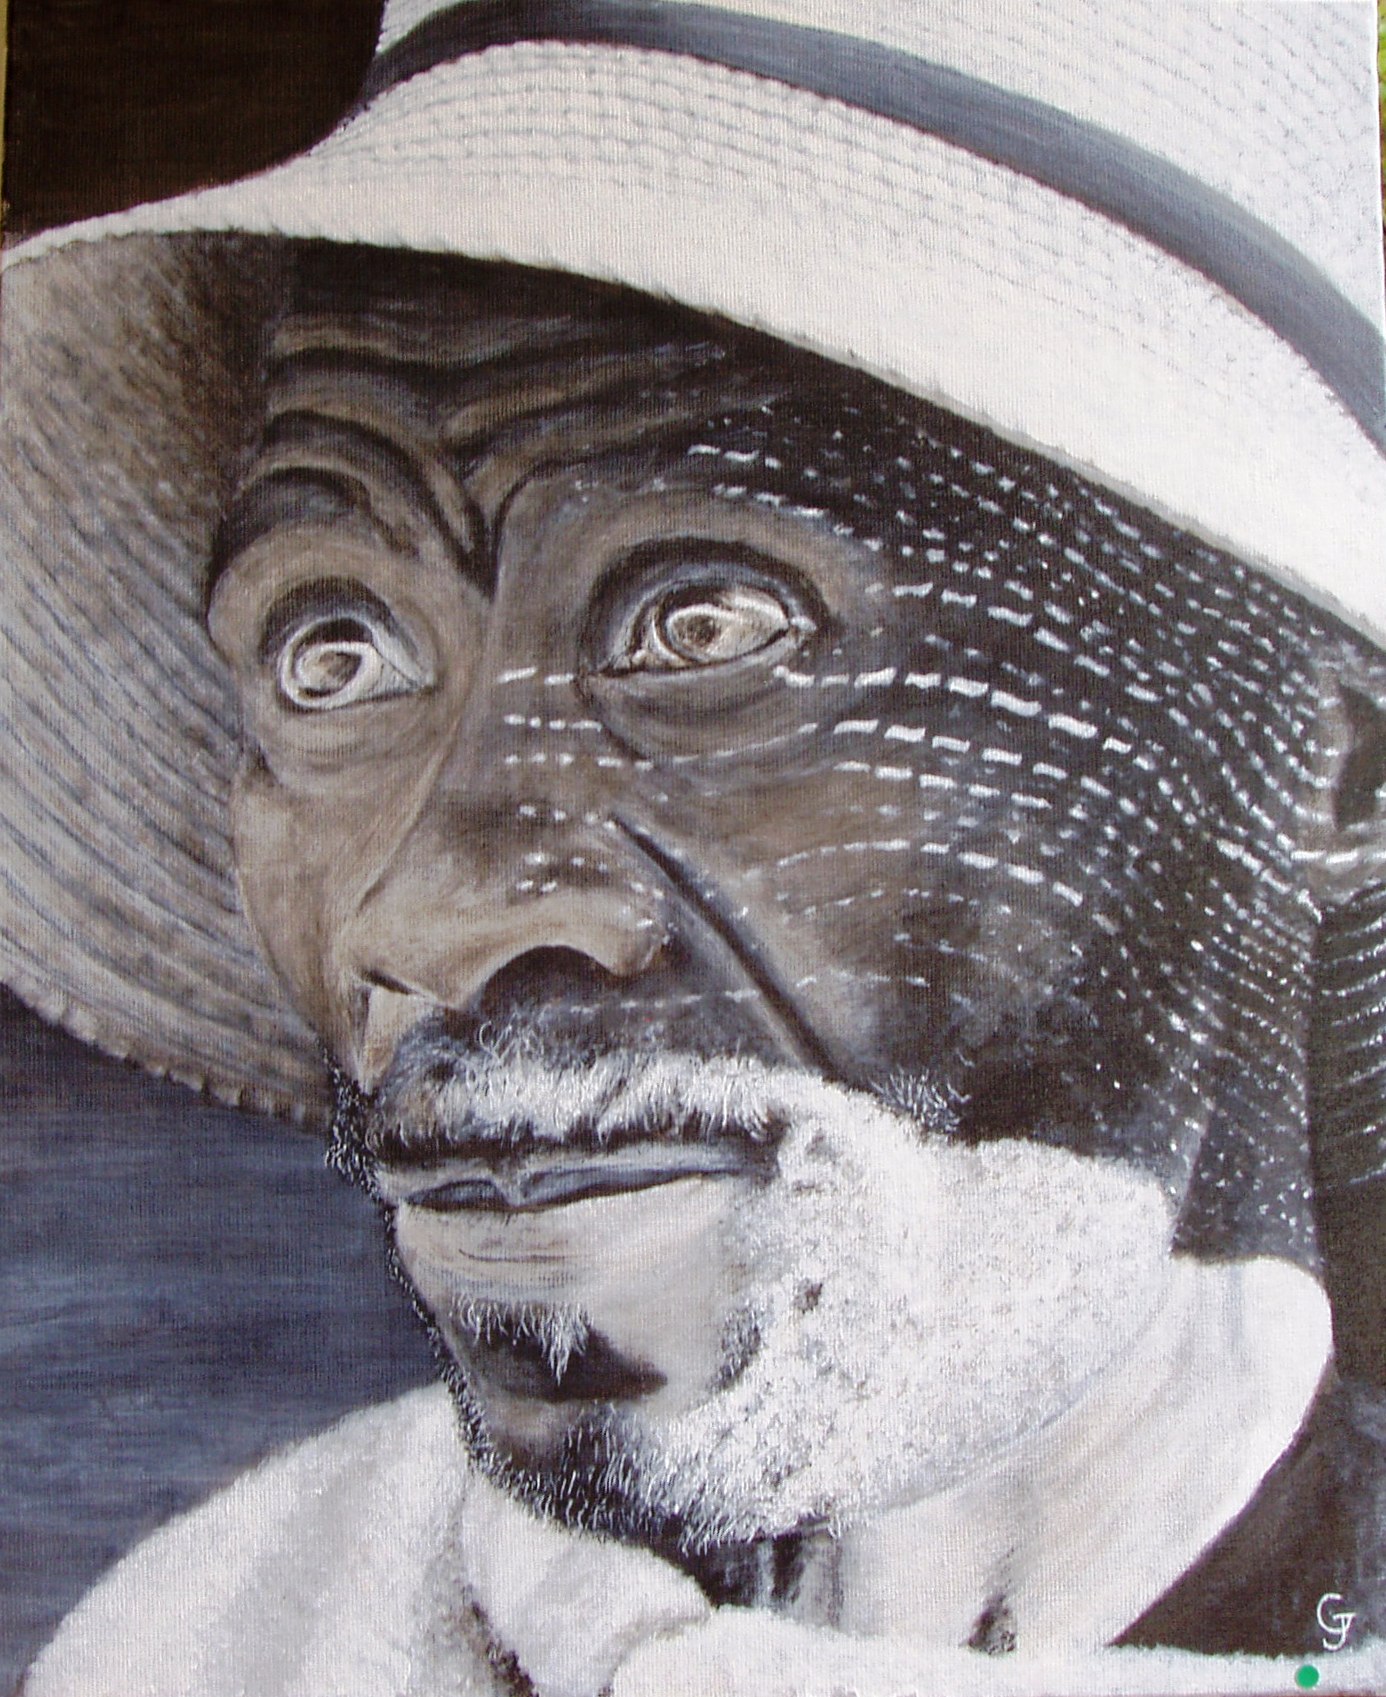 Gonzalez Jacques-2ième prix acrylique-Africain au chapeau